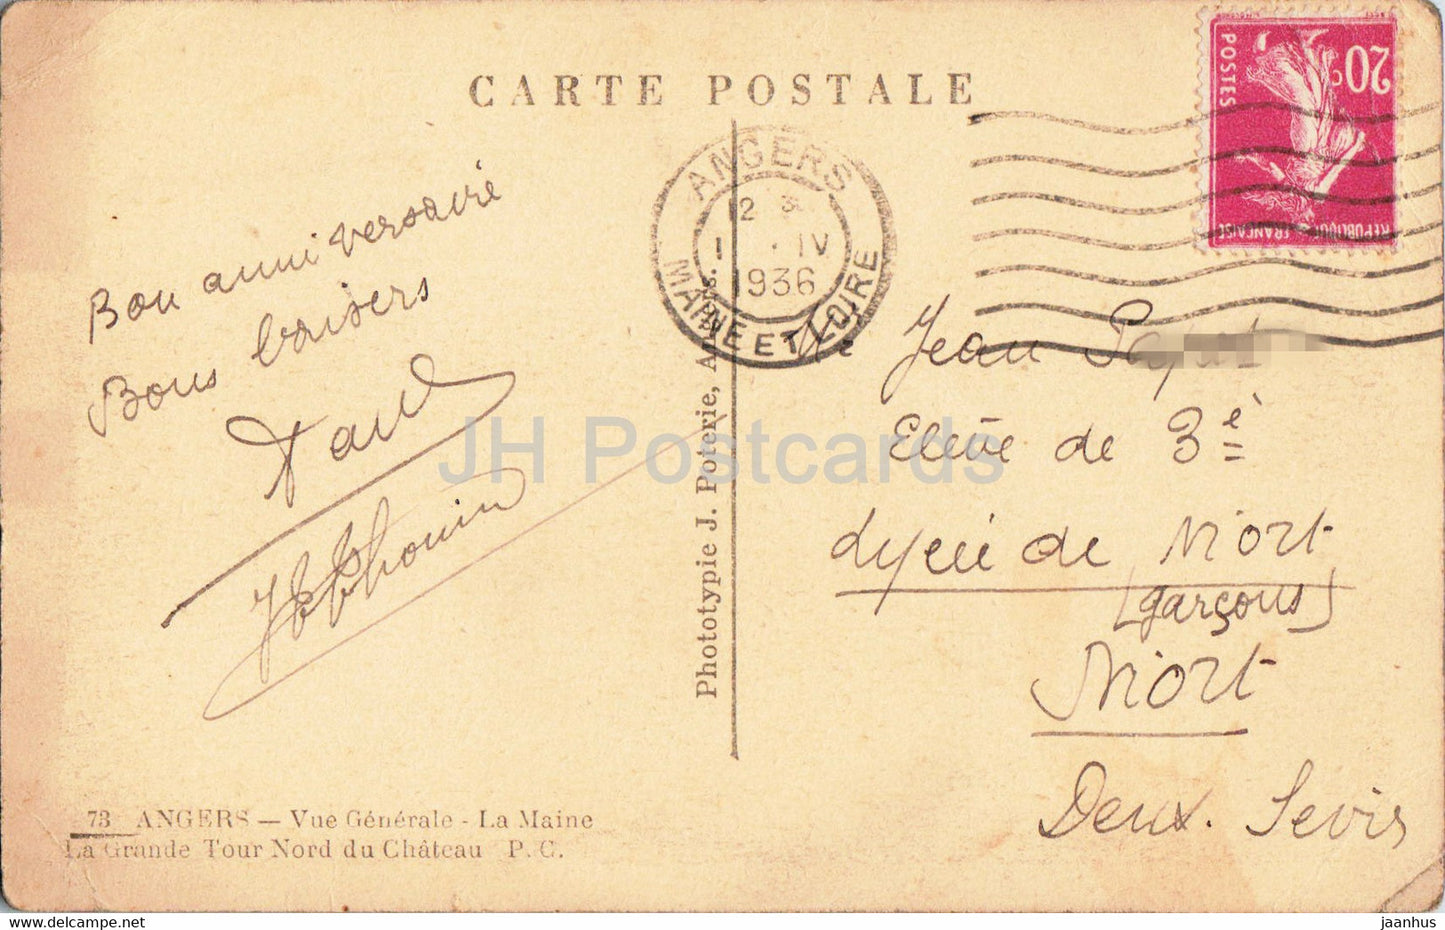 Angers - Vue Generale - La Maine - La Grande Tour Nord du Chateau - alte Postkarte - 1936 - Frankreich - gebraucht